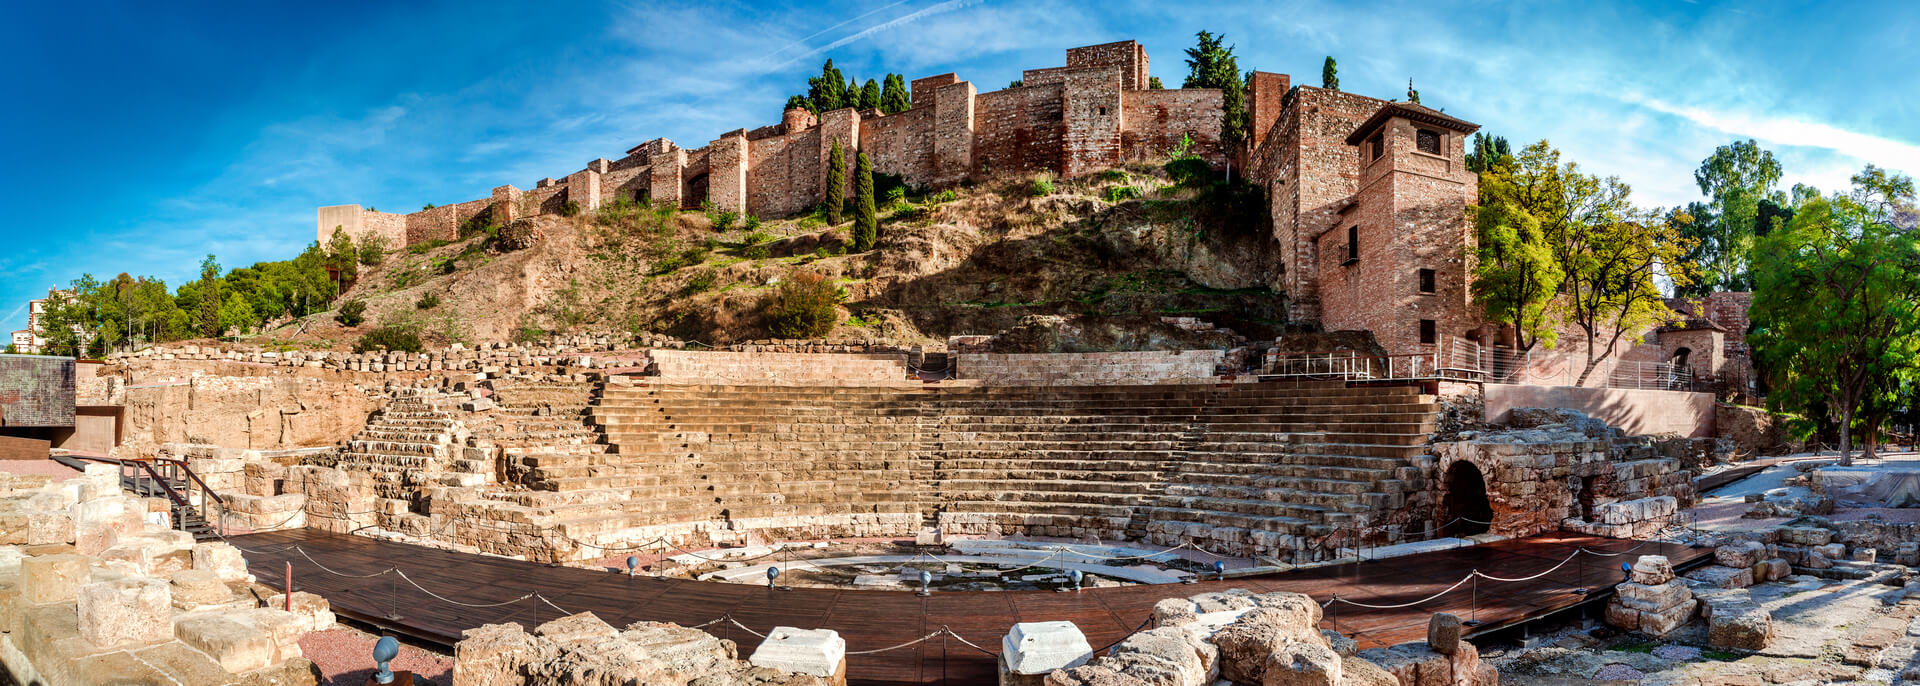 Besuch eines römischen Theaters